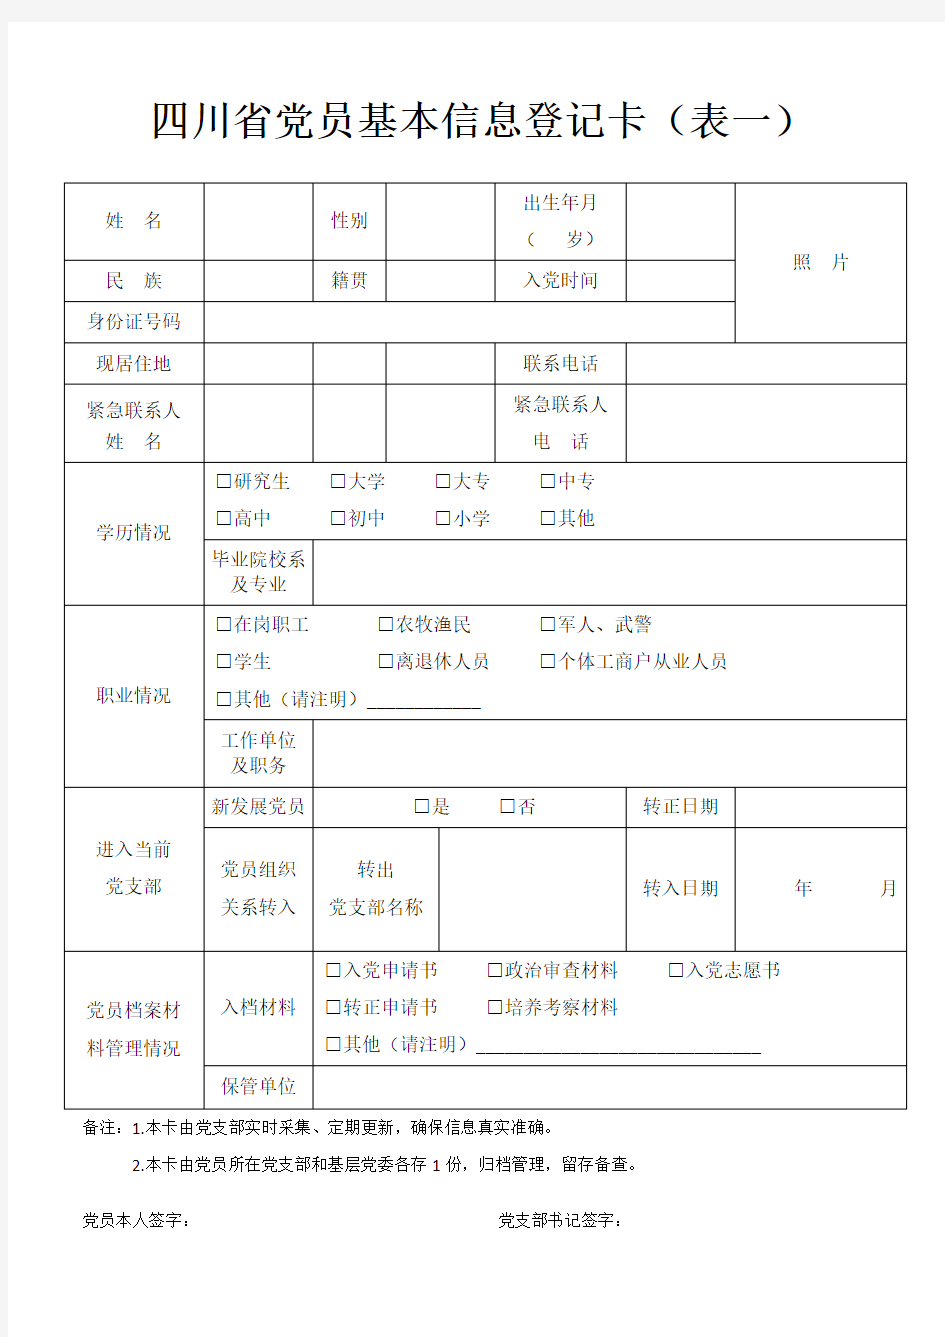 四川省党员基本信息登记卡